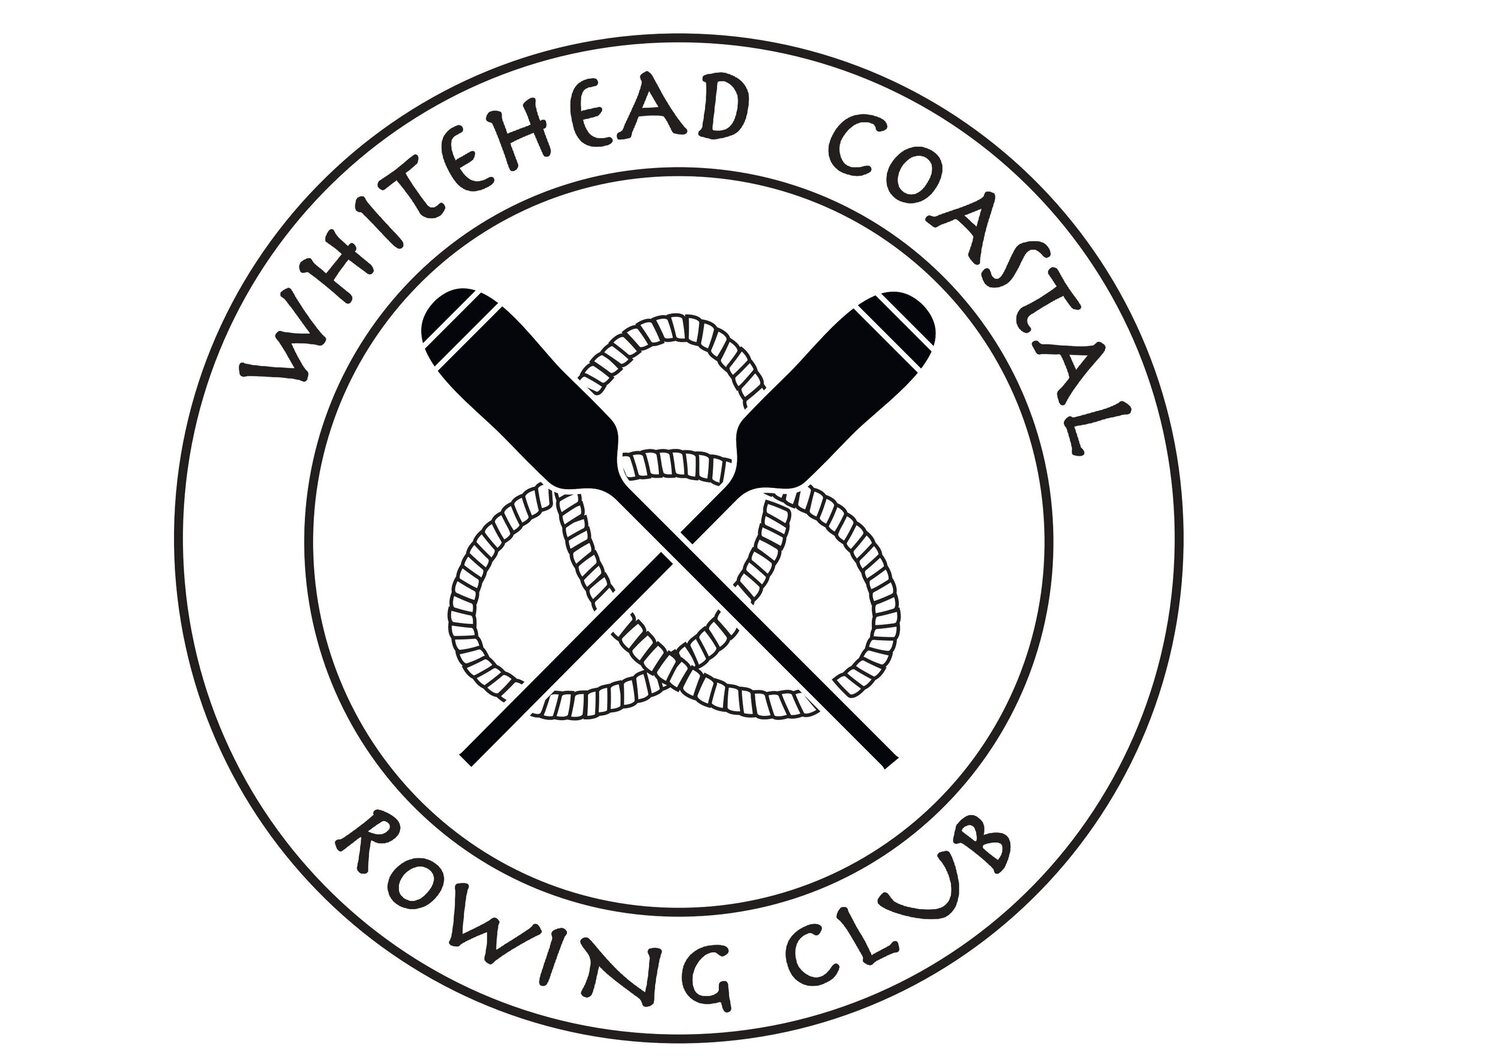 Whitehead Coastal Rowing Club